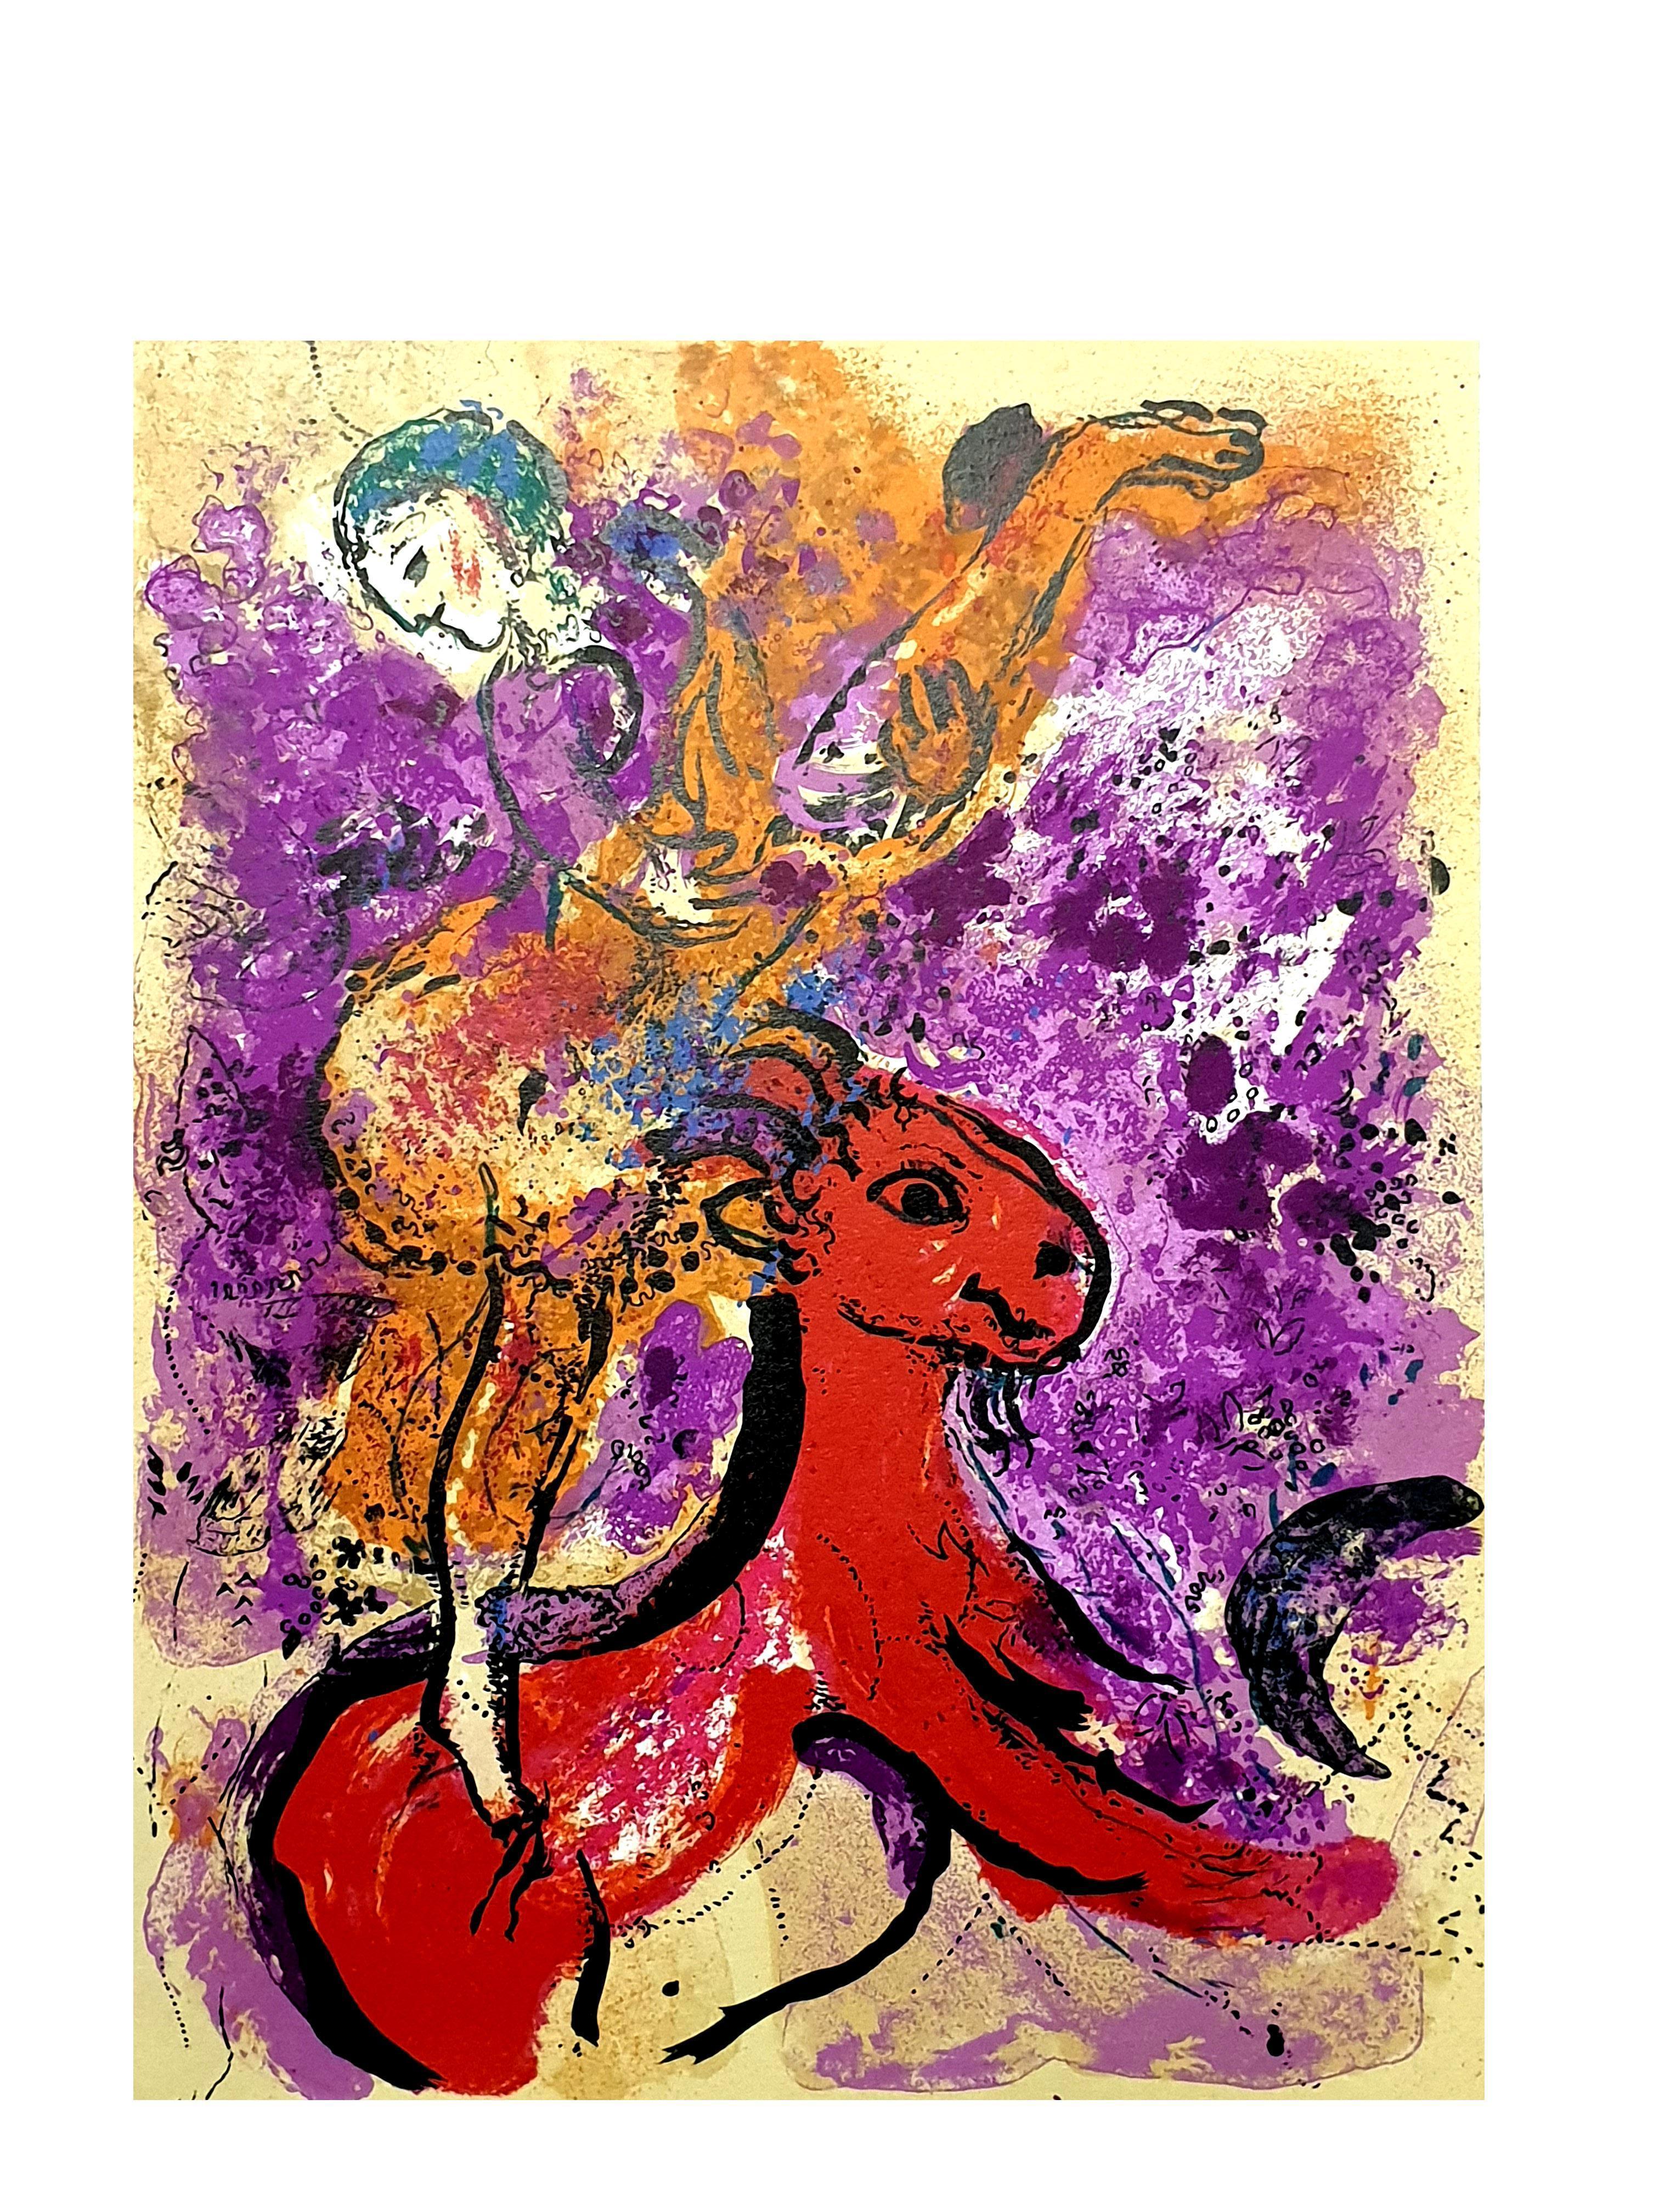 Marc Chagall - Lithographie originale
Le cavalier rouge
D'après la lithographie non signée et non numérotée imprimée dans la revue littéraire XXe Siecle. 
1957
Voir Mourlot 191
Dimensions : 32 x 24 cm 
Éditeur : G. di San Lazzaro.

Marc Chagall  (né